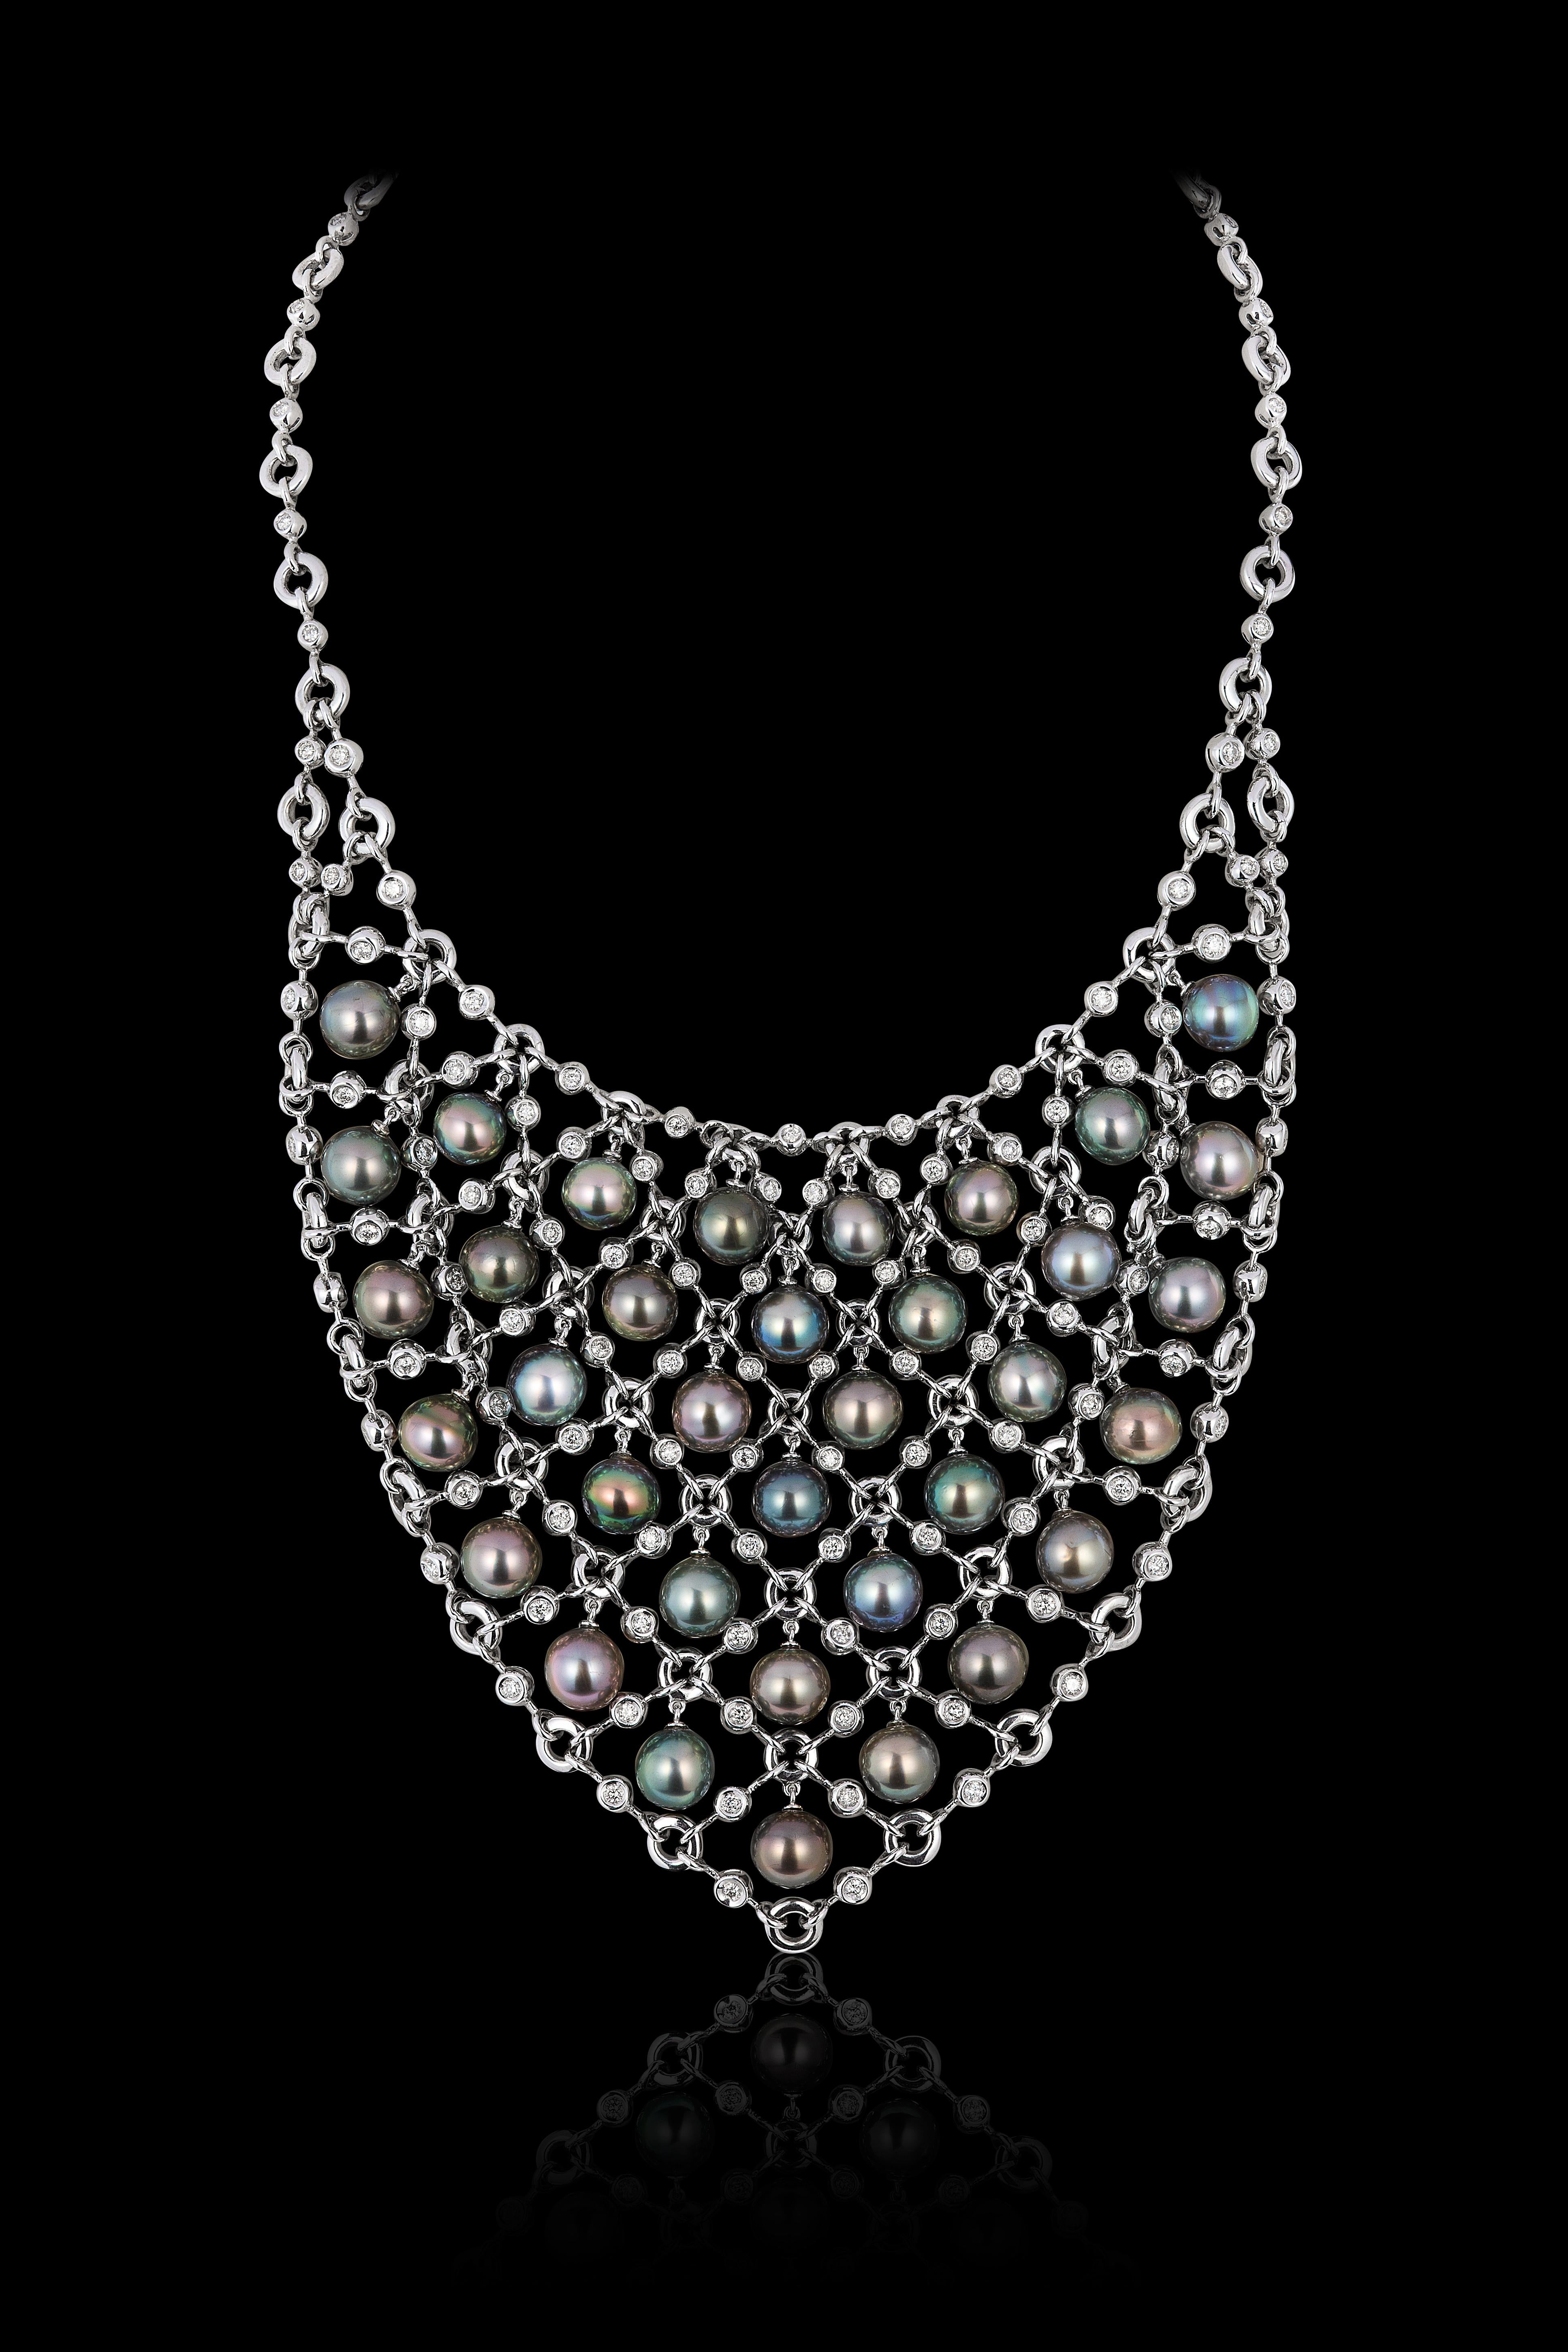 Andreoli Collier en cotte de mailles avec perles de Tahiti et diamants en or blanc 18 carats

Ce collier Andreoli est caractérisé par

Diamant de 4,12 carats
Perles de Tahiti
142 grammes d'or blanc 18 carats

Fabriqué en Italie